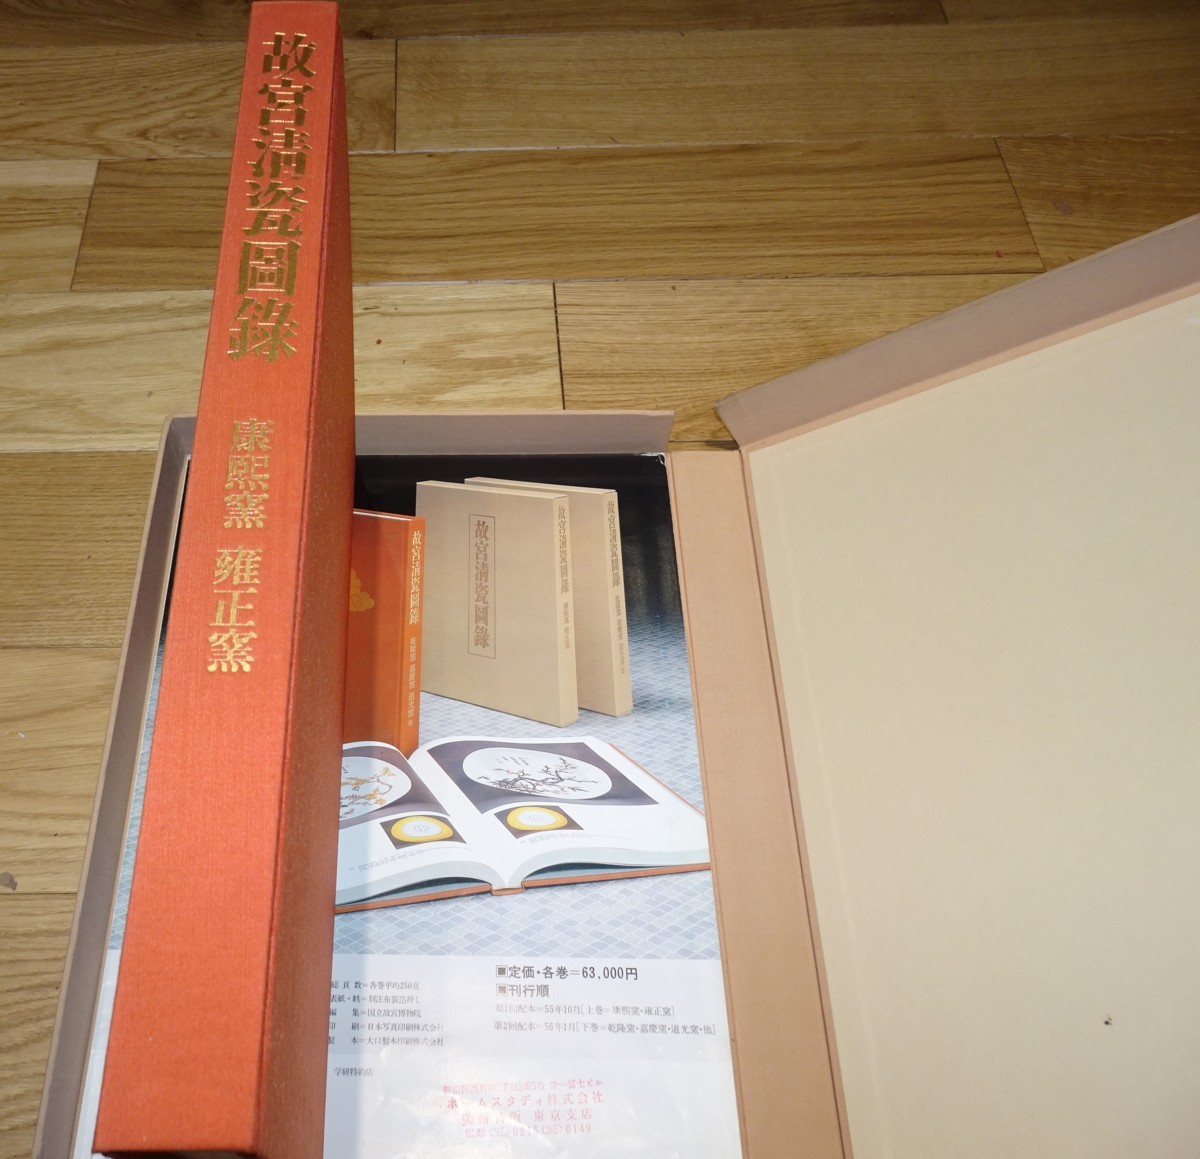 rarebookkyoto 1F77 台北 故宮博物院清瓷図録 康煕 雍正 一冊 限定 大型本 1980年 学研 名人 名品 名作